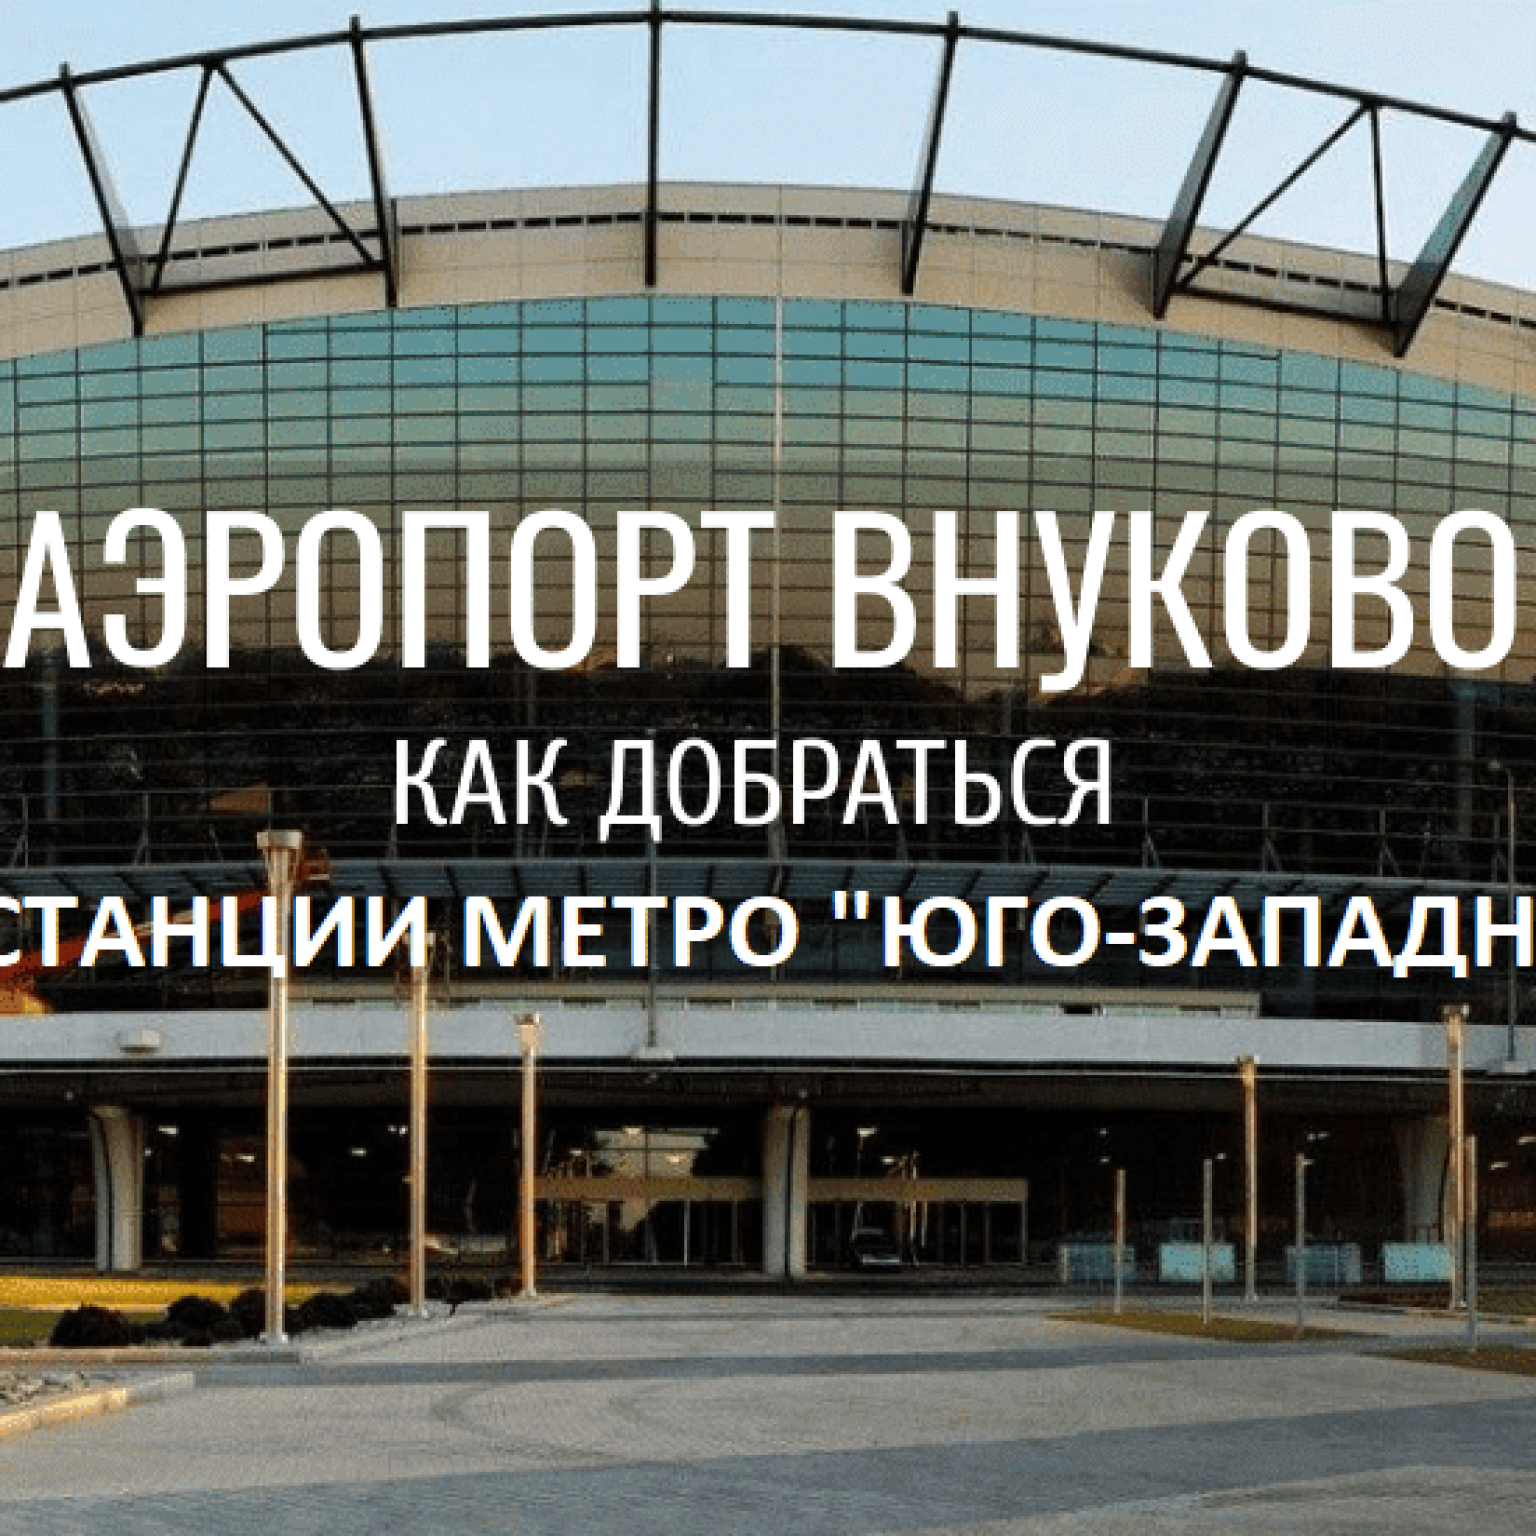 Как добраться от станции метро “Юго-Западная” до аэропорта Внуково: автобусы, маршрутки, такси